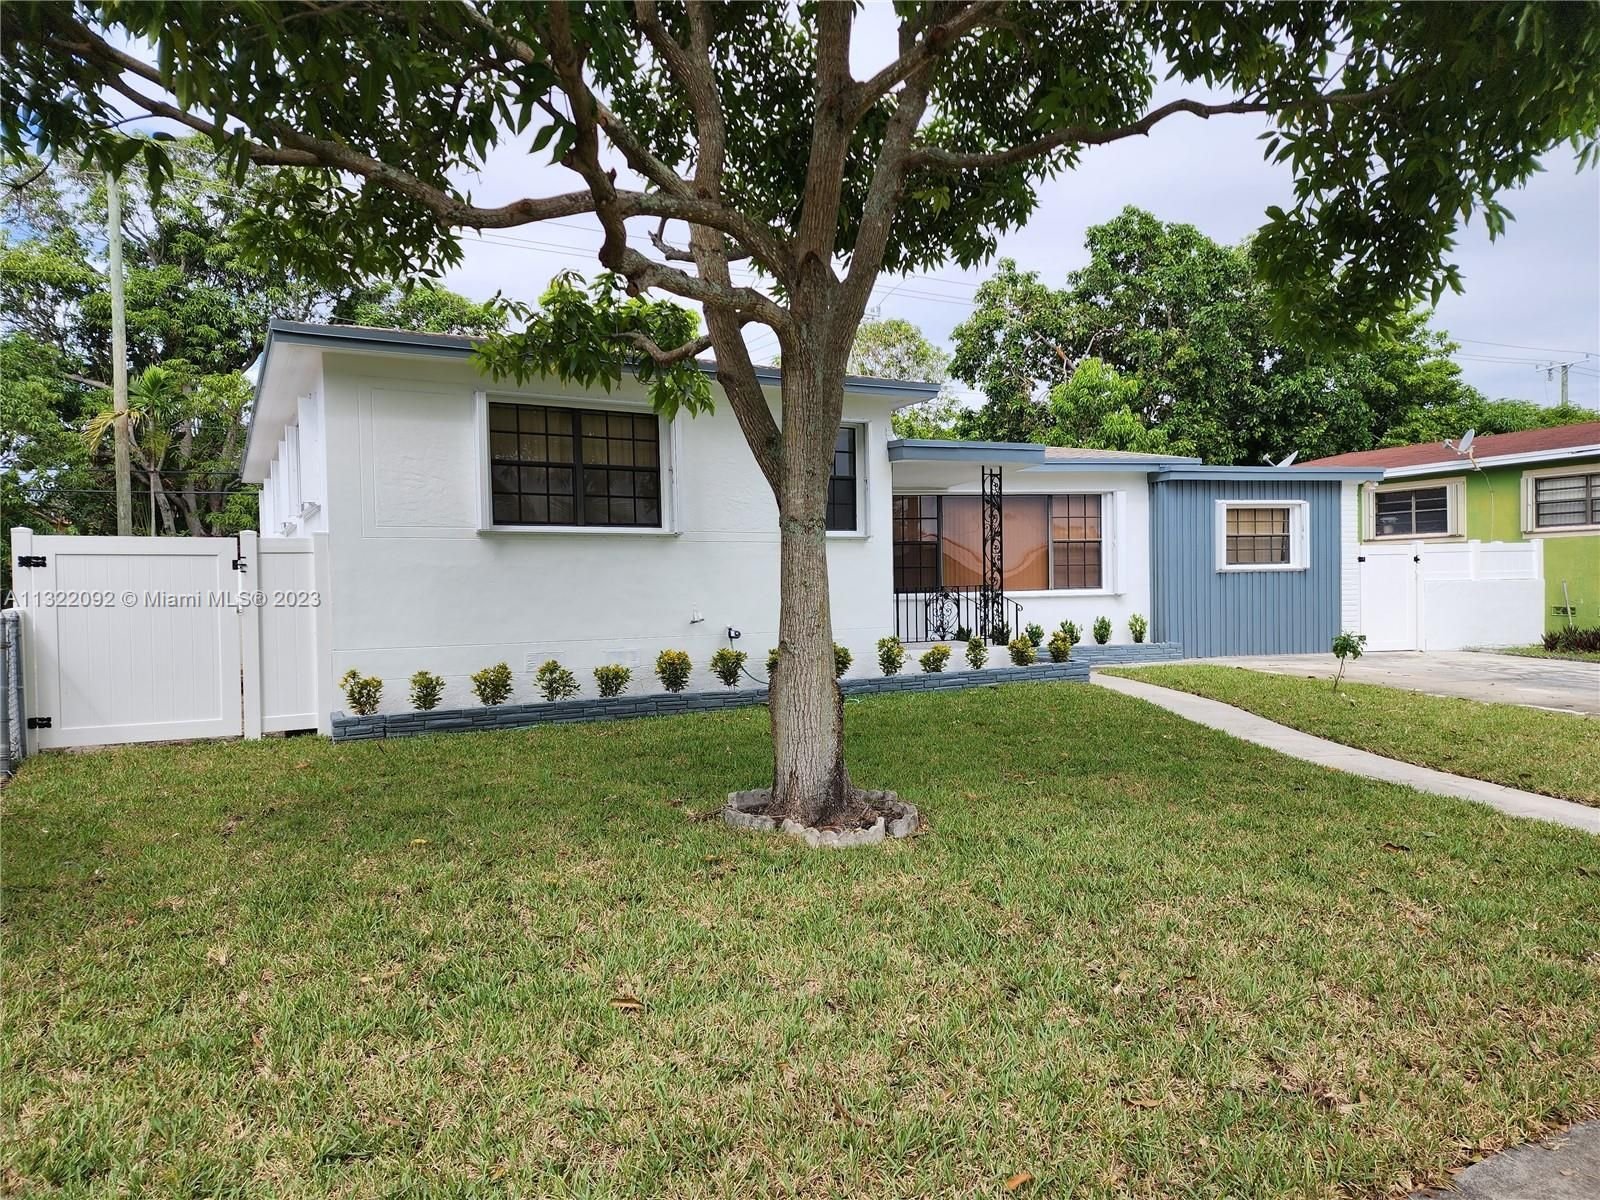 Real estate property located at 12620 Miami Court, Miami-Dade County, North Miami, FL